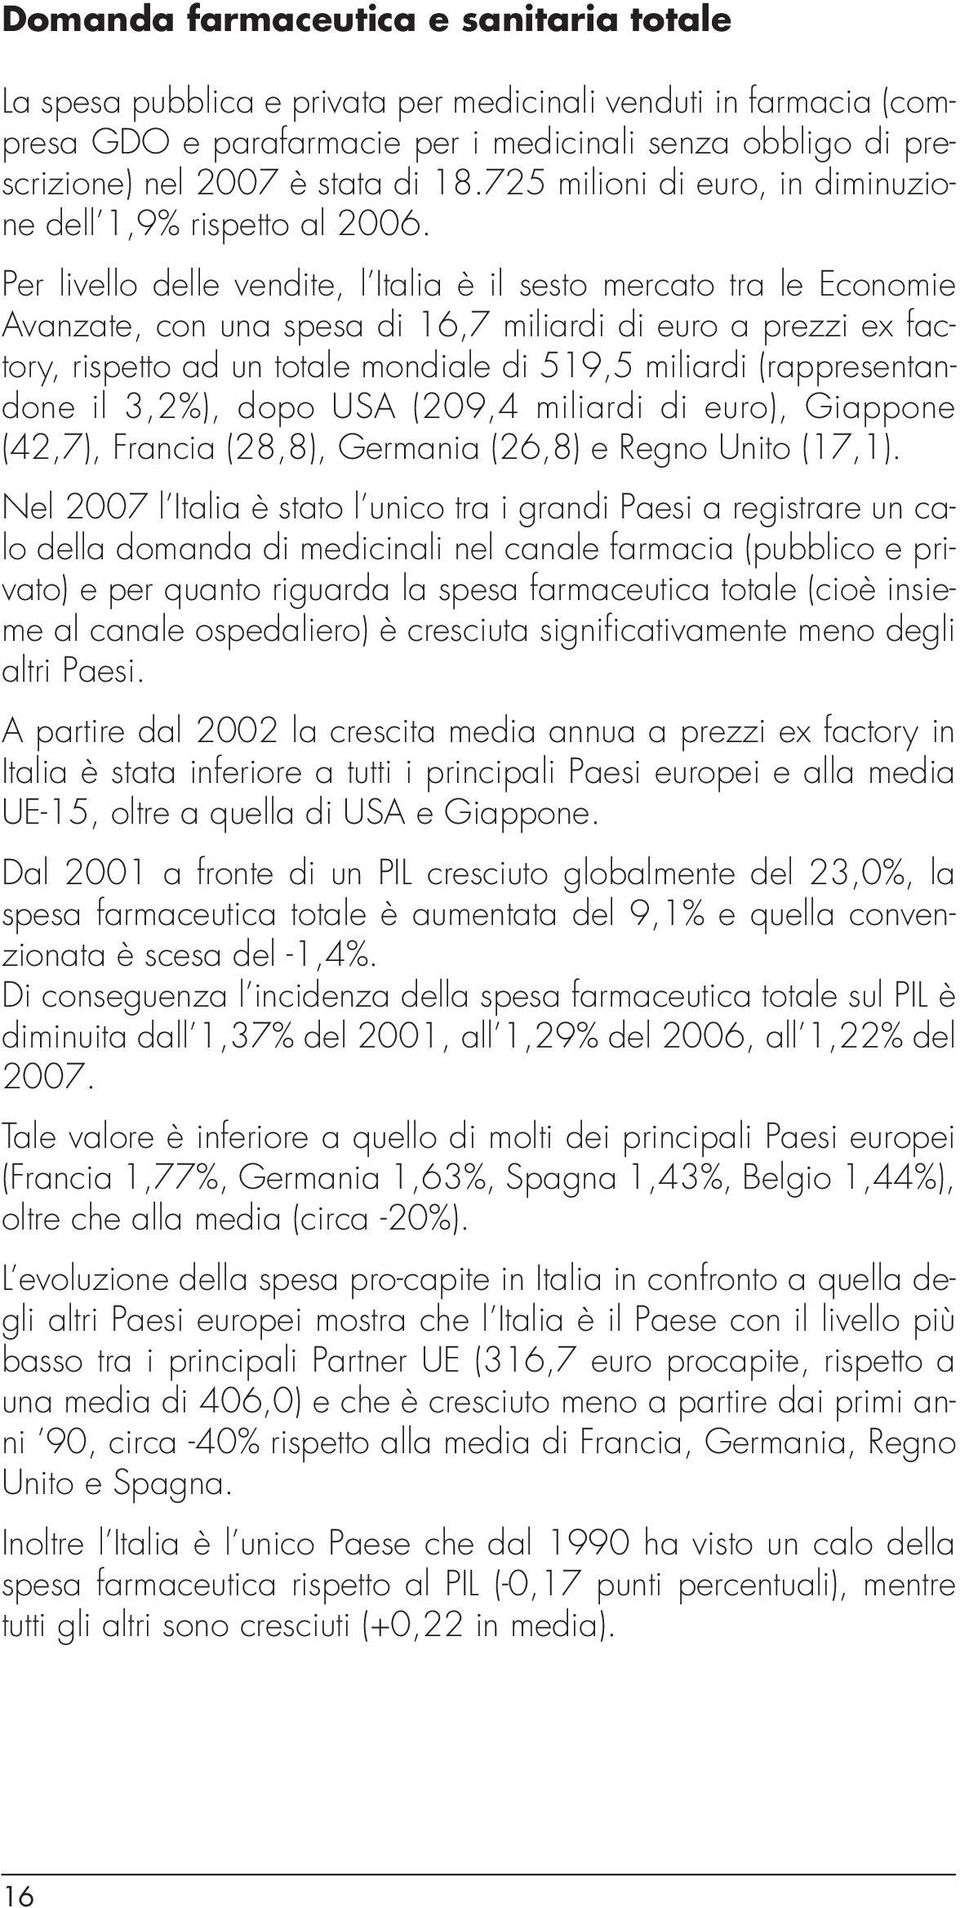 Per livello delle vendite, l Italia è il sesto mercato tra le Economie Avanzate, con una spesa di 16,7 miliardi di euro a prezzi ex factory, rispetto ad un totale mondiale di 519,5 miliardi